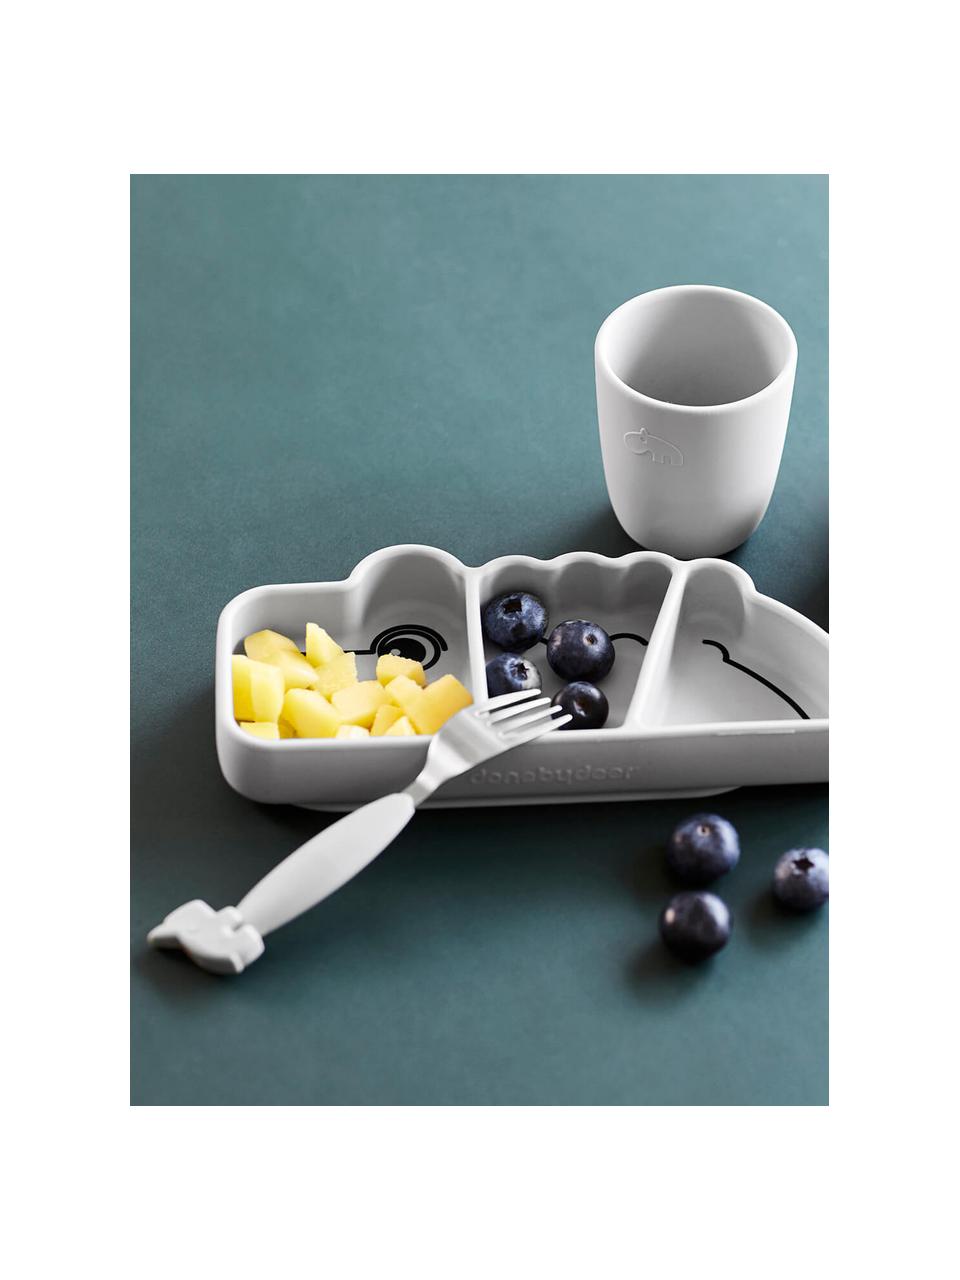 Snack-Teller Croco mit Stick & Stay Funktion, 100 % Silikon, Hellgrau, B 21 x H 3 cm